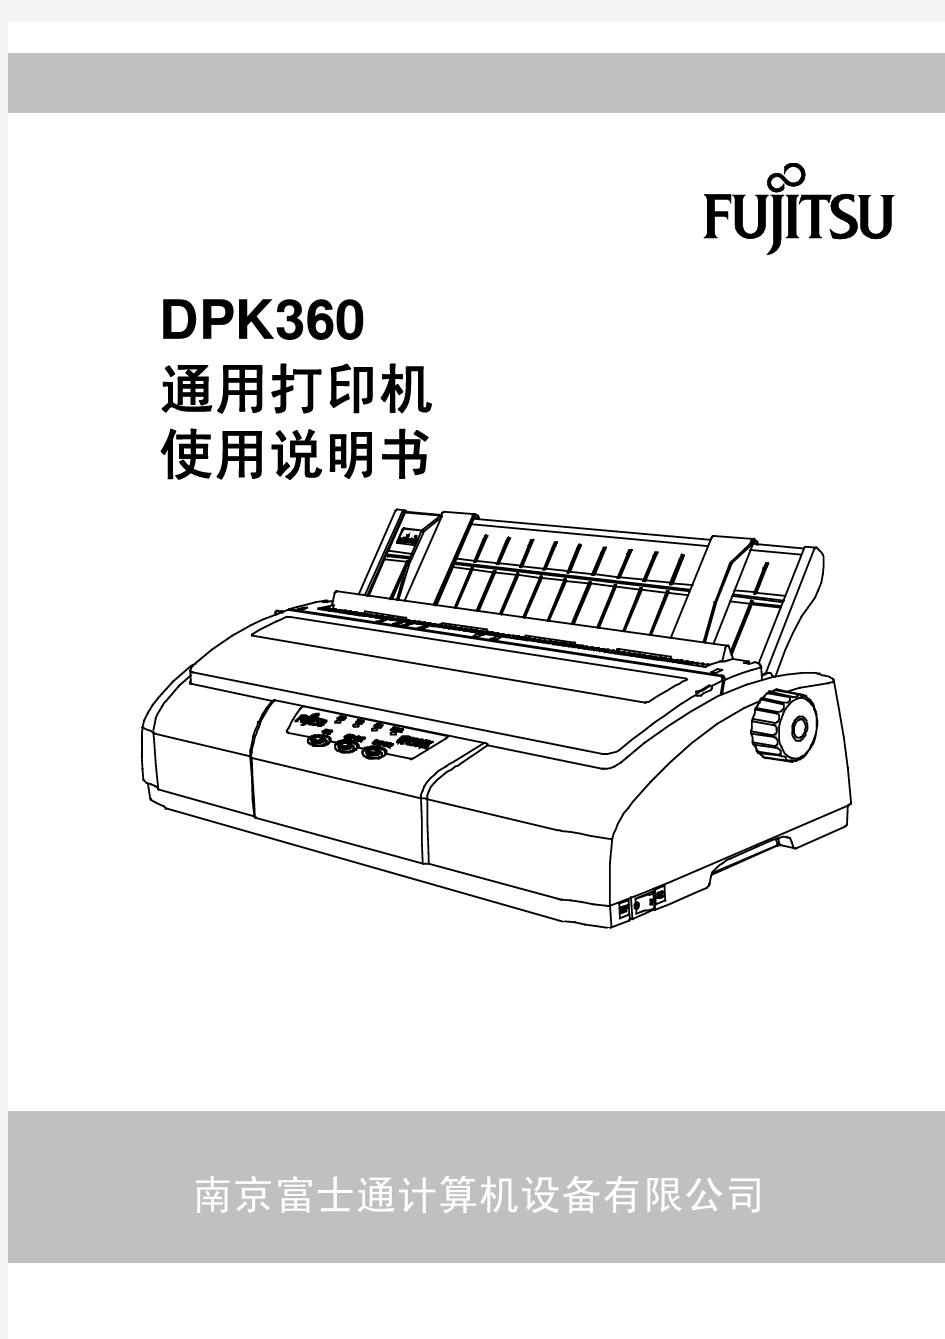 DPK360说明书